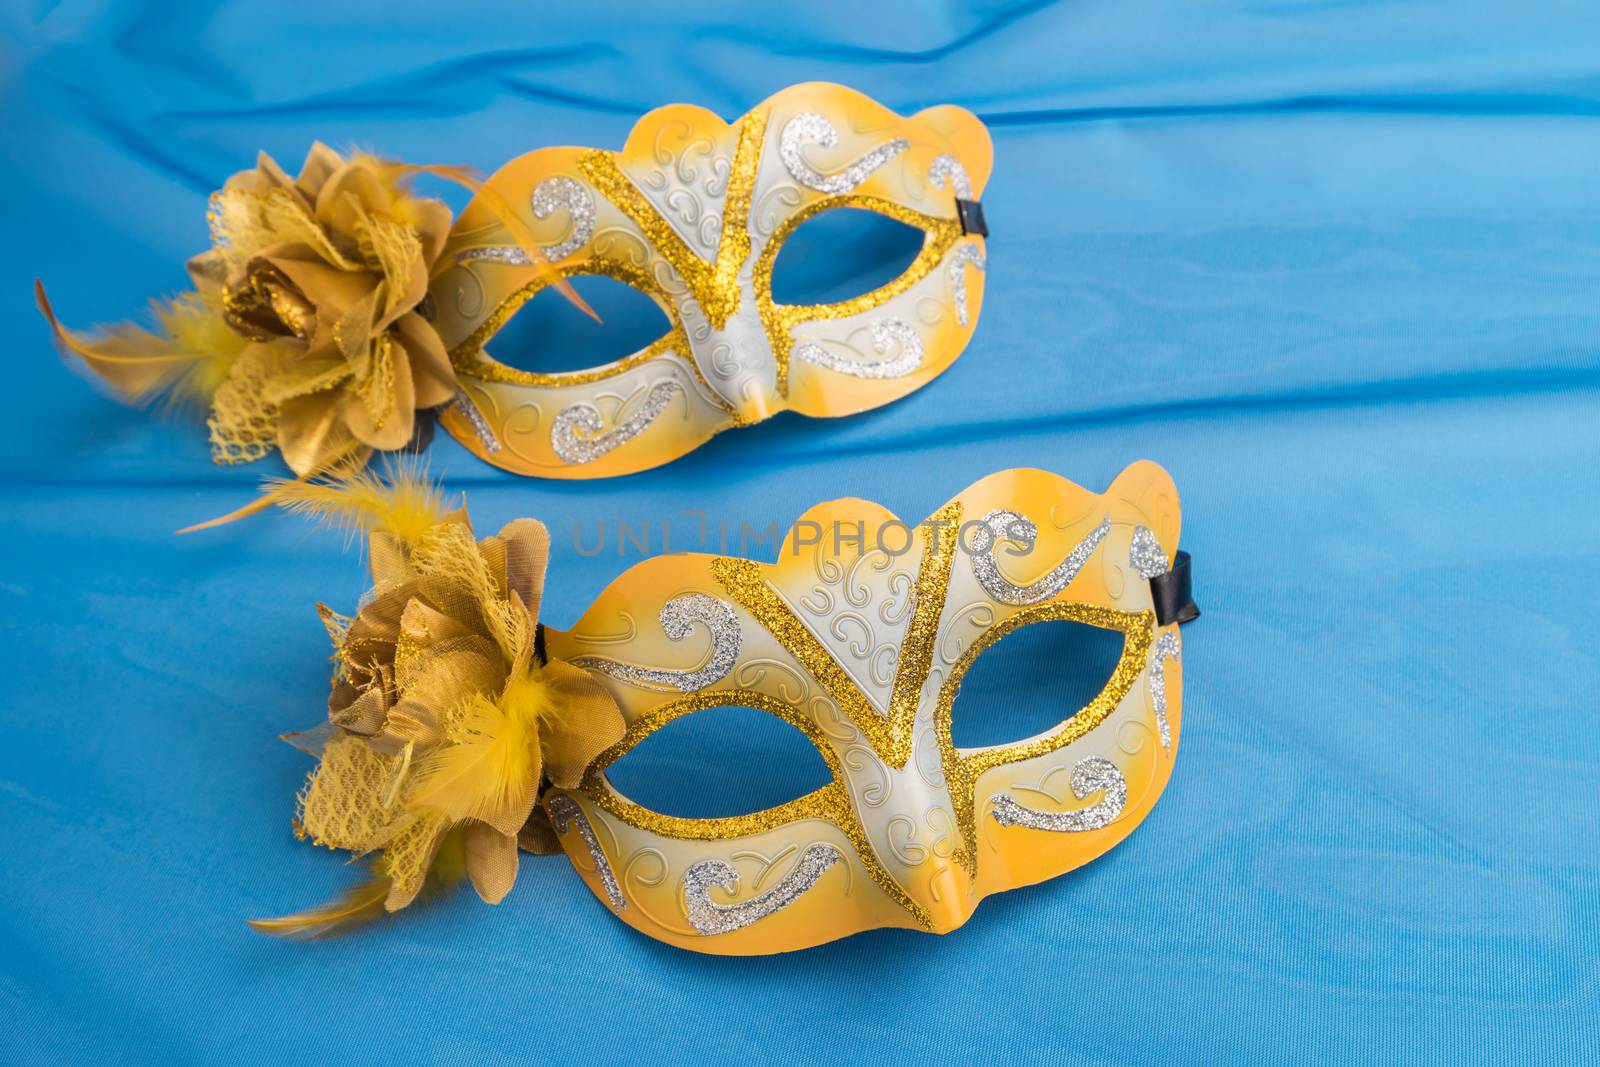 Carnival masks on blue background.